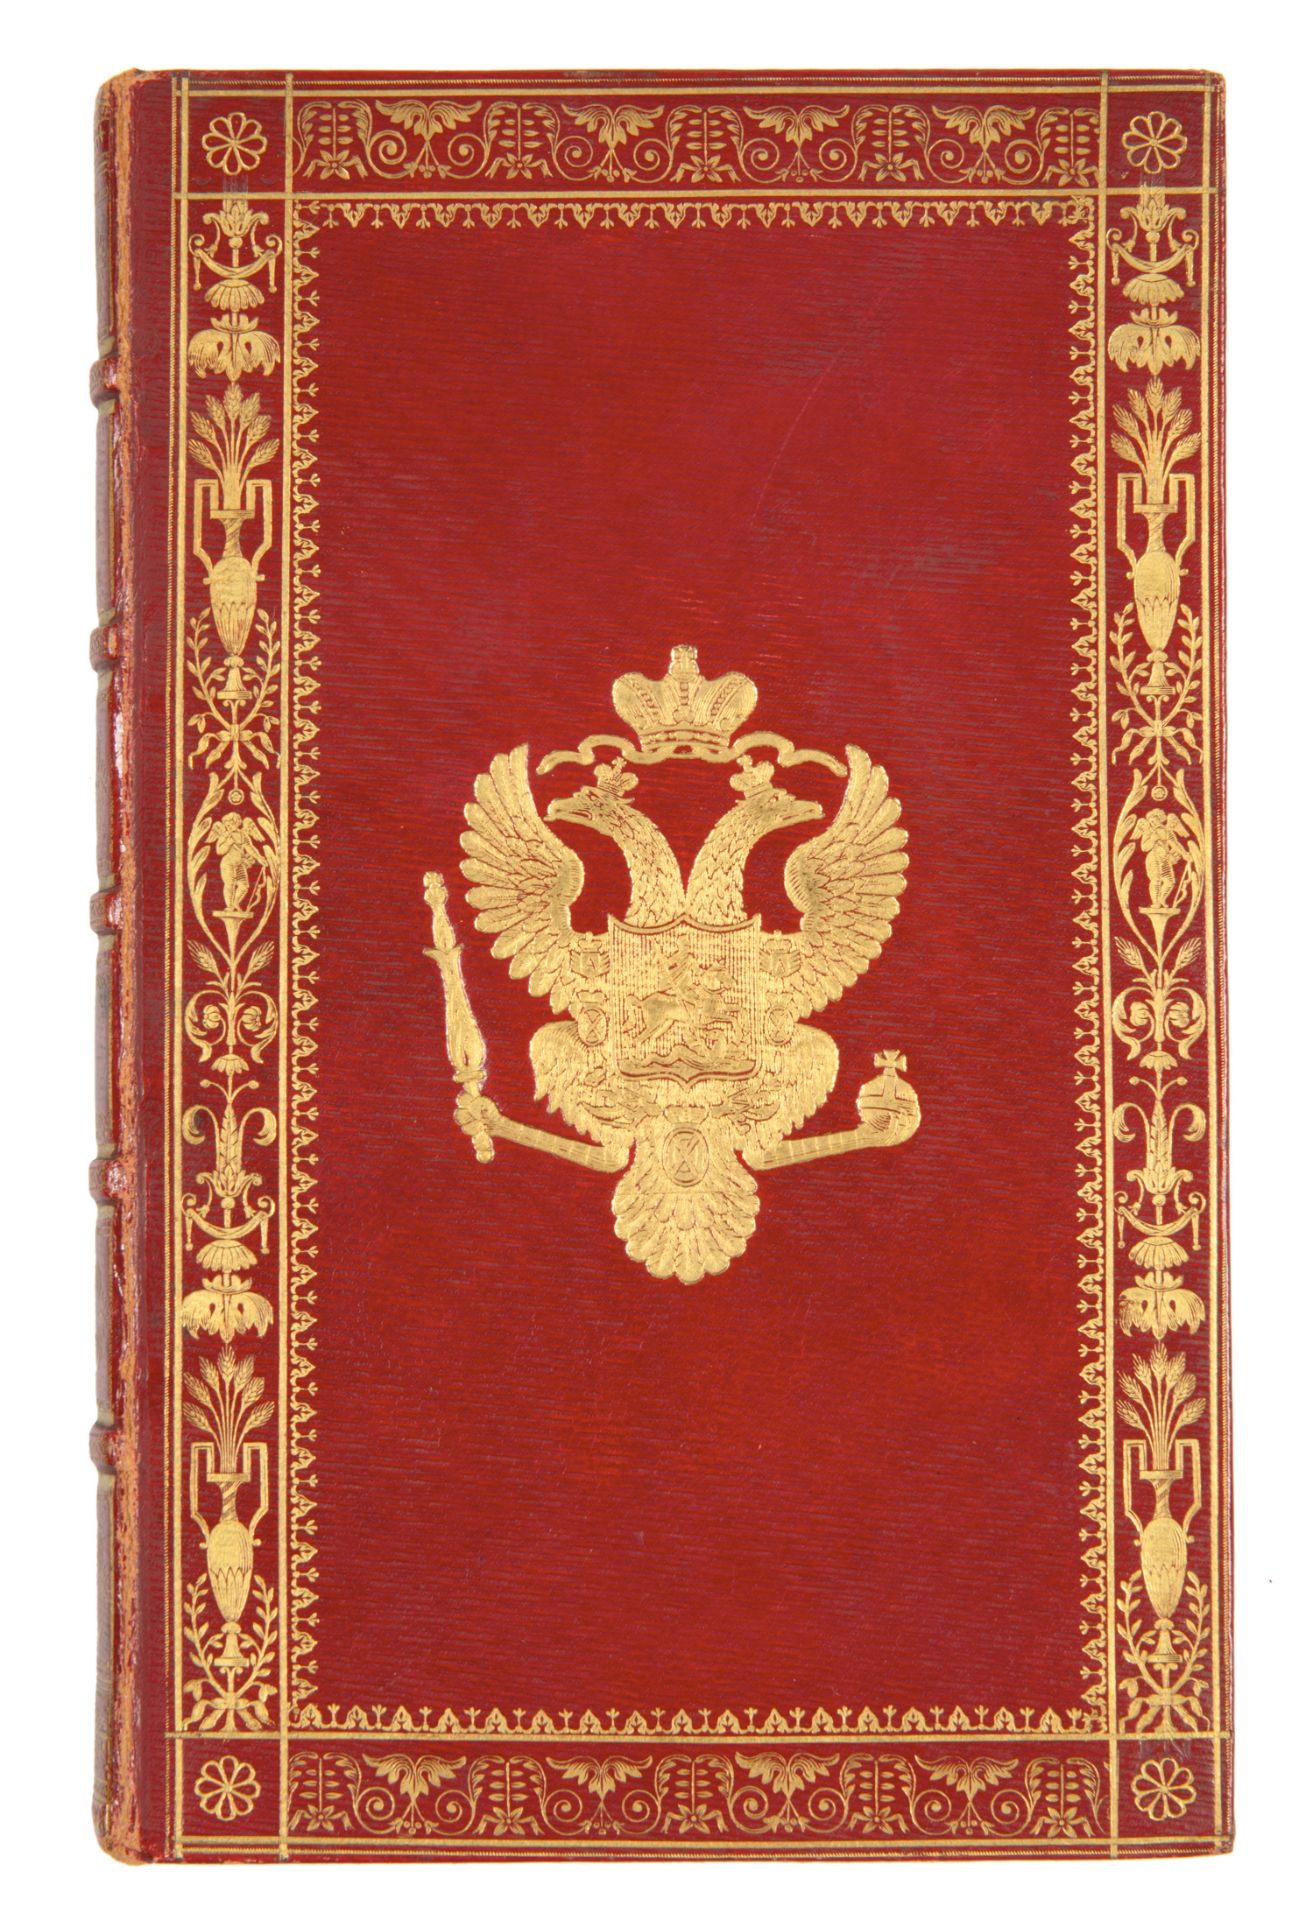 [SUPERB IMPERIAL PRESENTATION COPY] FABRE D’OLIVET, DE L’ETAT SOCIAL DE L’HOMME, 1822 - Image 2 of 12